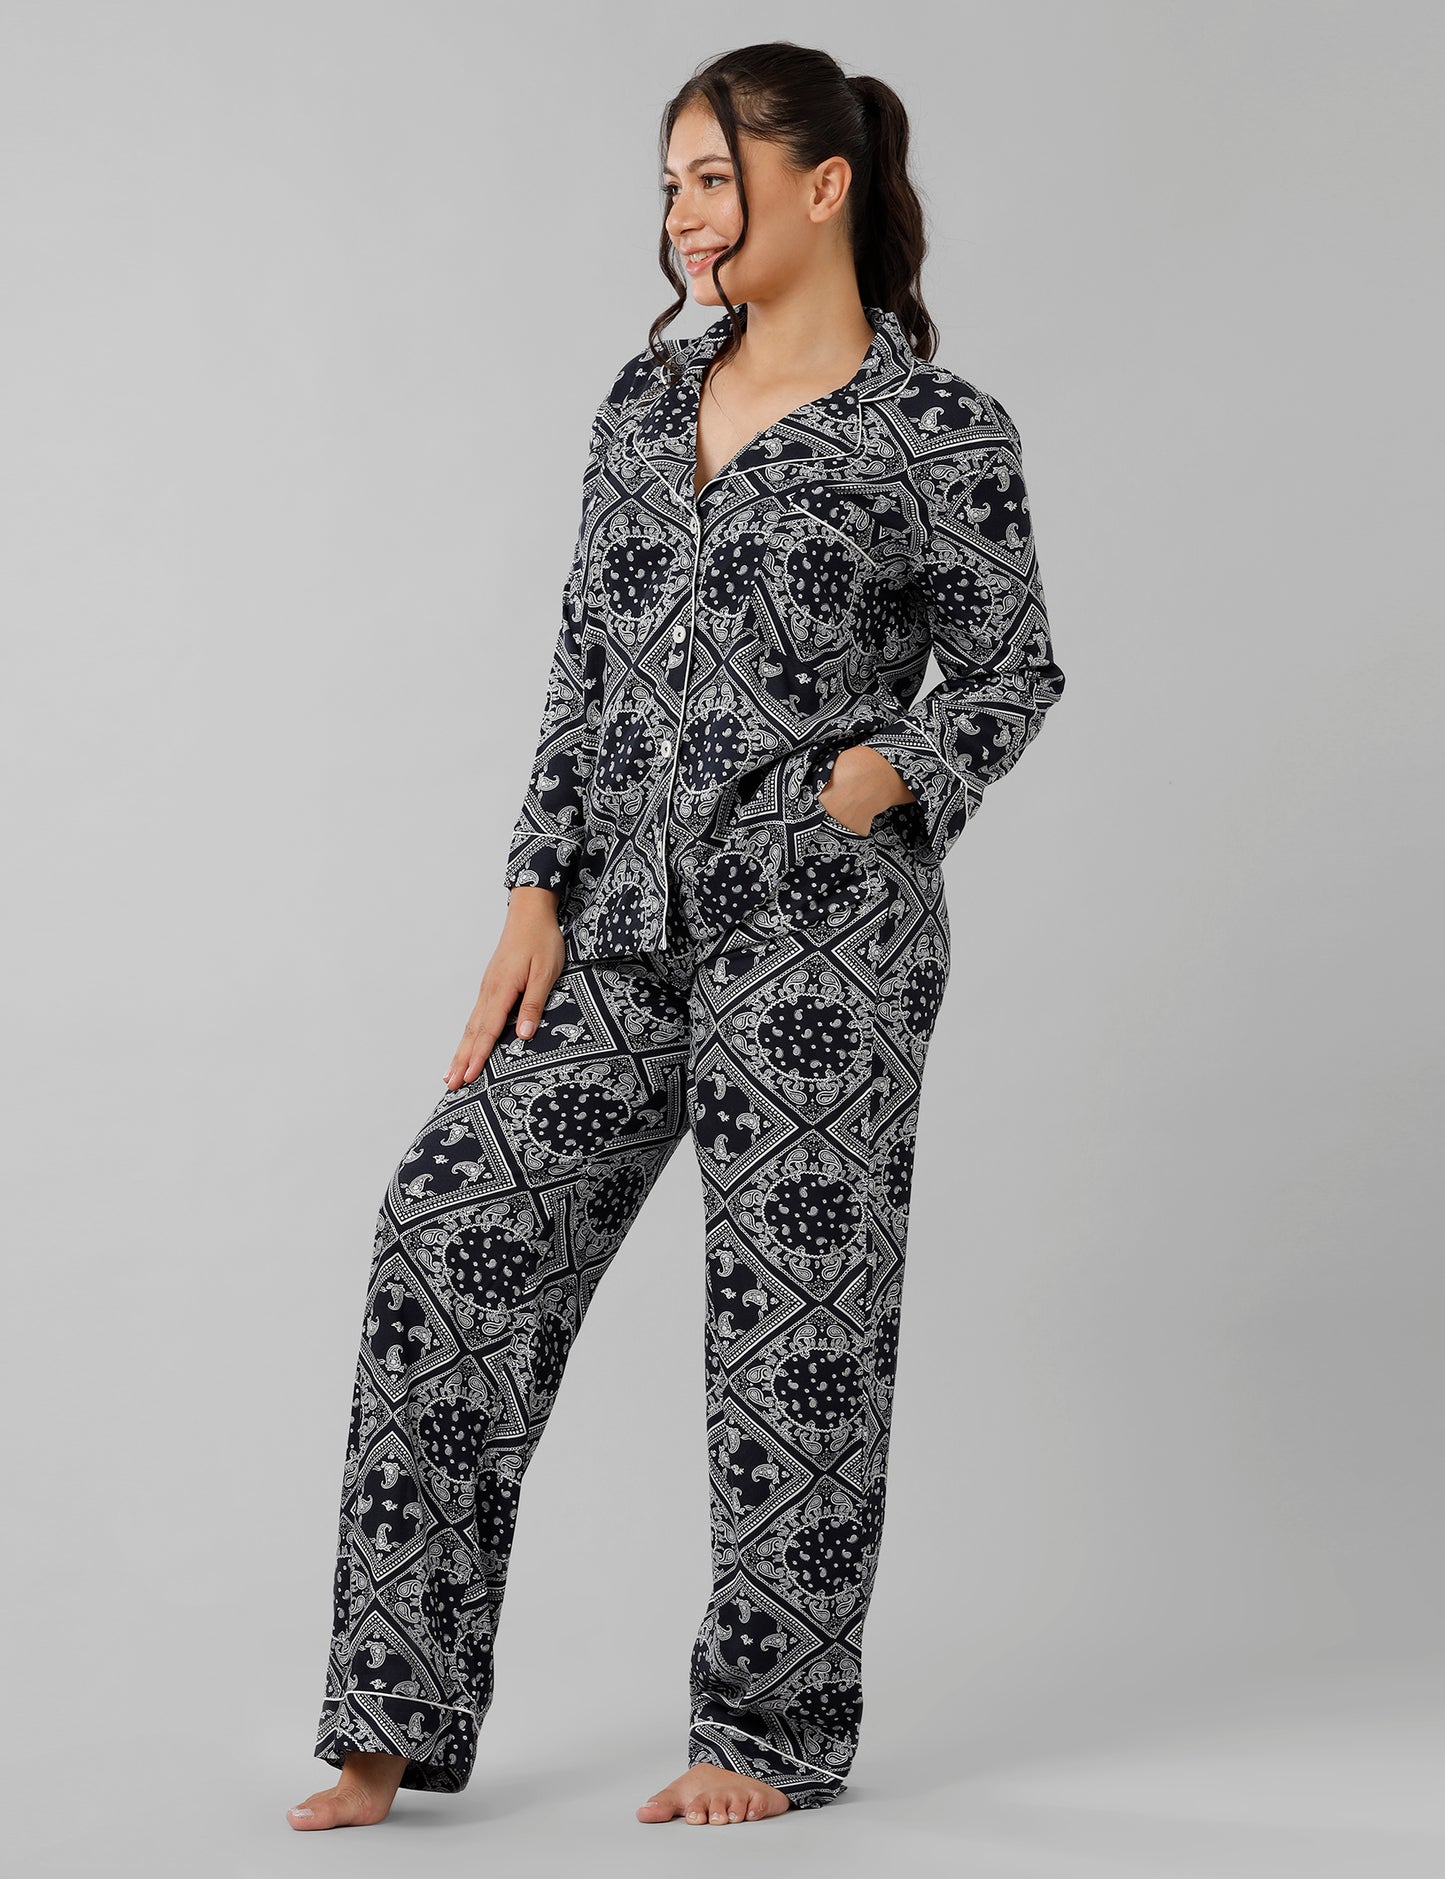 Bandana Pajama Set